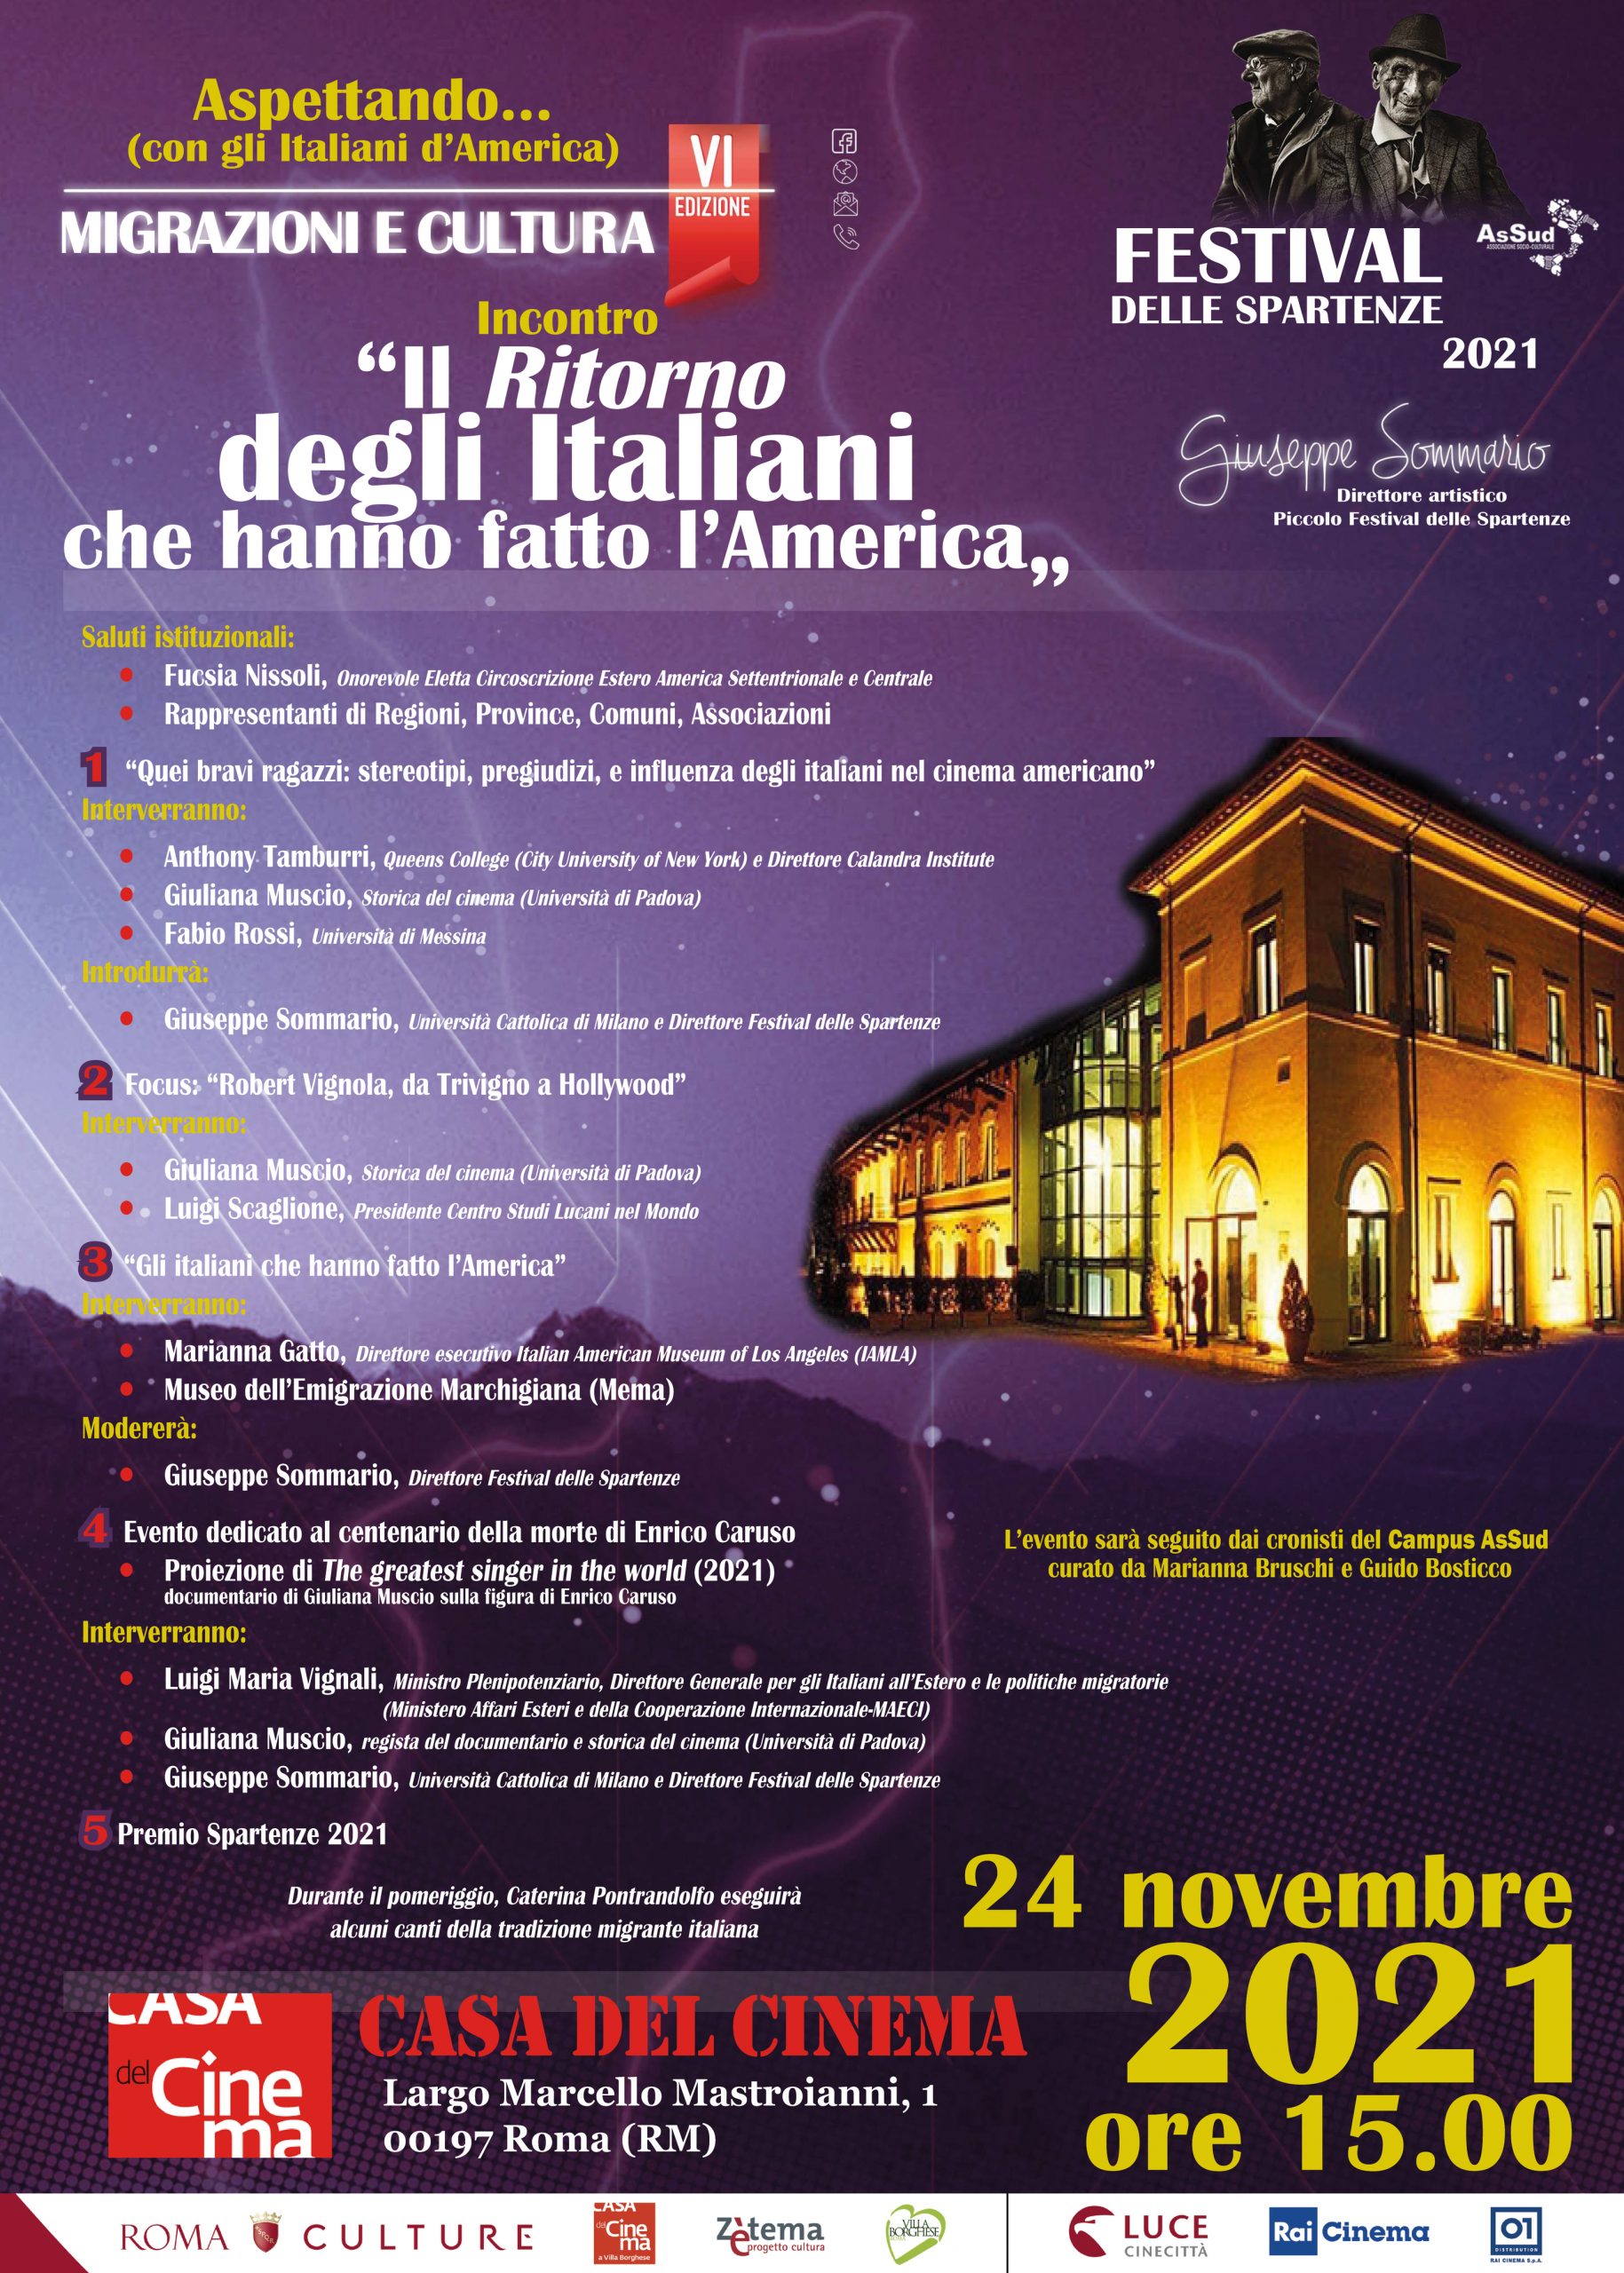 Mercoledì 24 il Museo dell’Emigrazione Marchigiana si racconta alla Casa del Cinema di Roma, in occasione del prestigioso “Festival delle Spartenze“